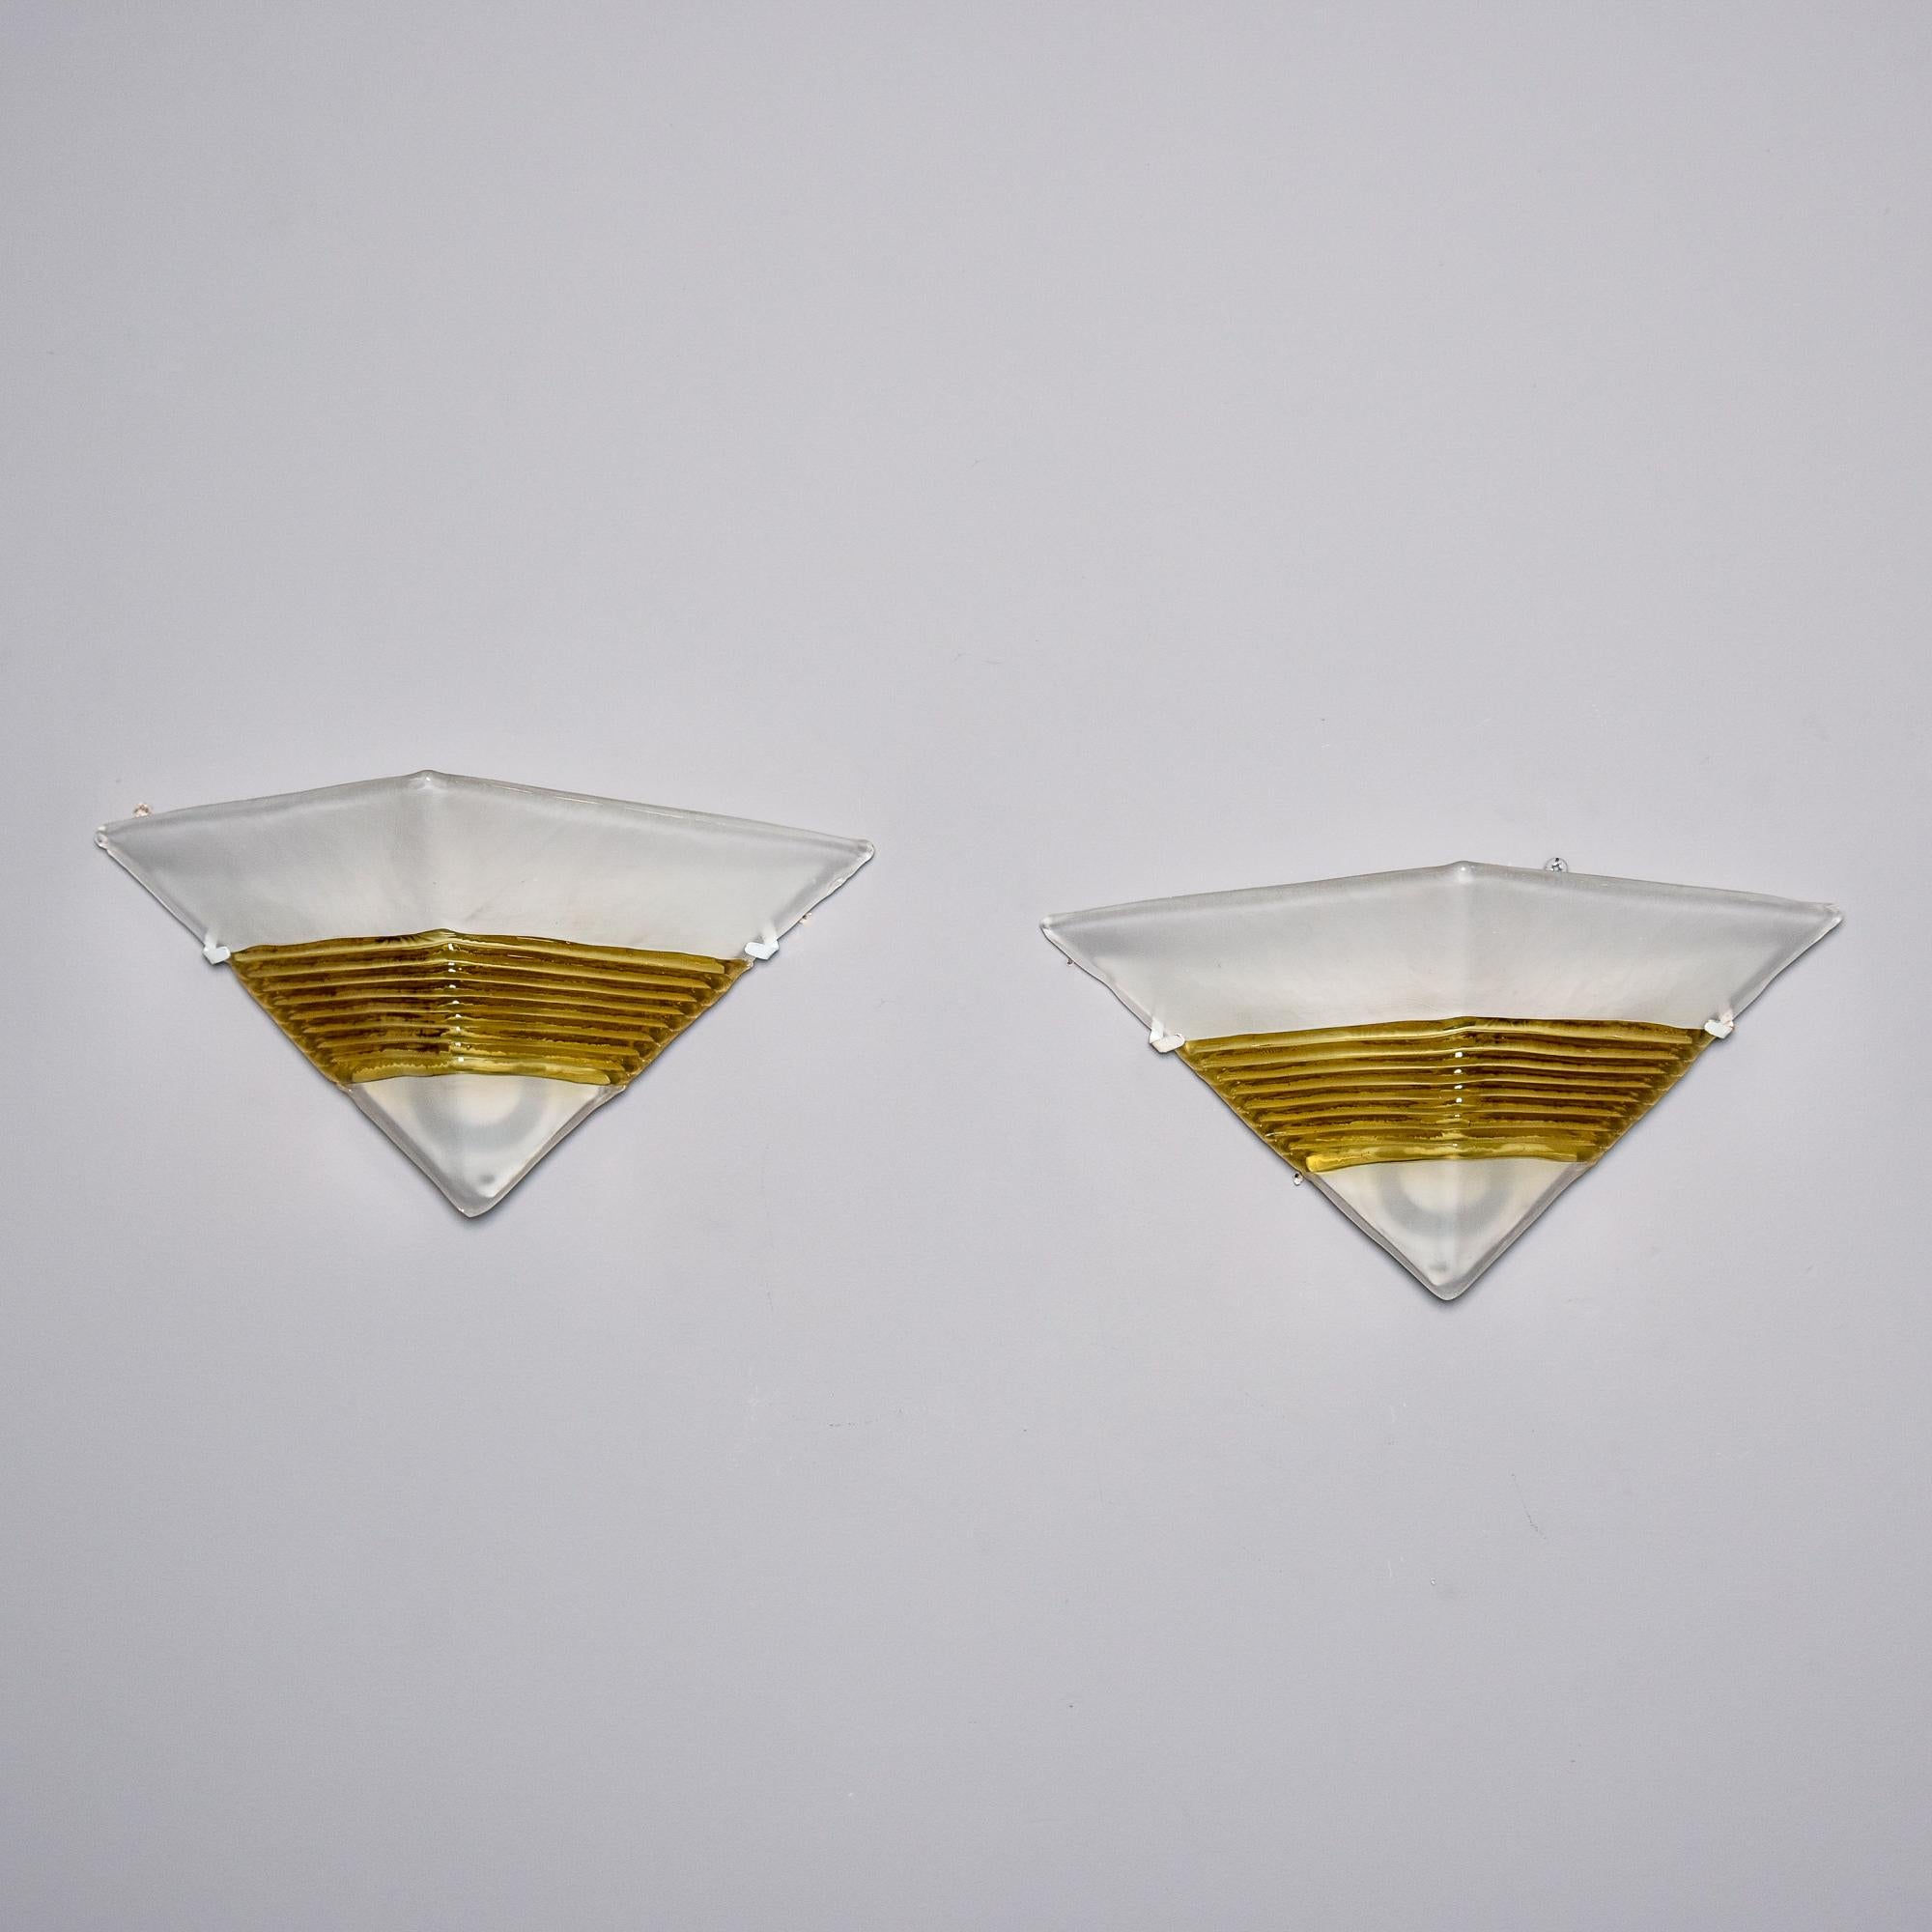 Paar Murano-Glasleuchten von AV Mazzega, ca. 1990. Jeder dicke, fast undurchsichtige weiße, dreieckige Glasschirm ist mit einem geriffelten, goldenen Band akzentuiert. Die Lampenschirme werden bündig an der Wand angebracht und decken eine einzelne